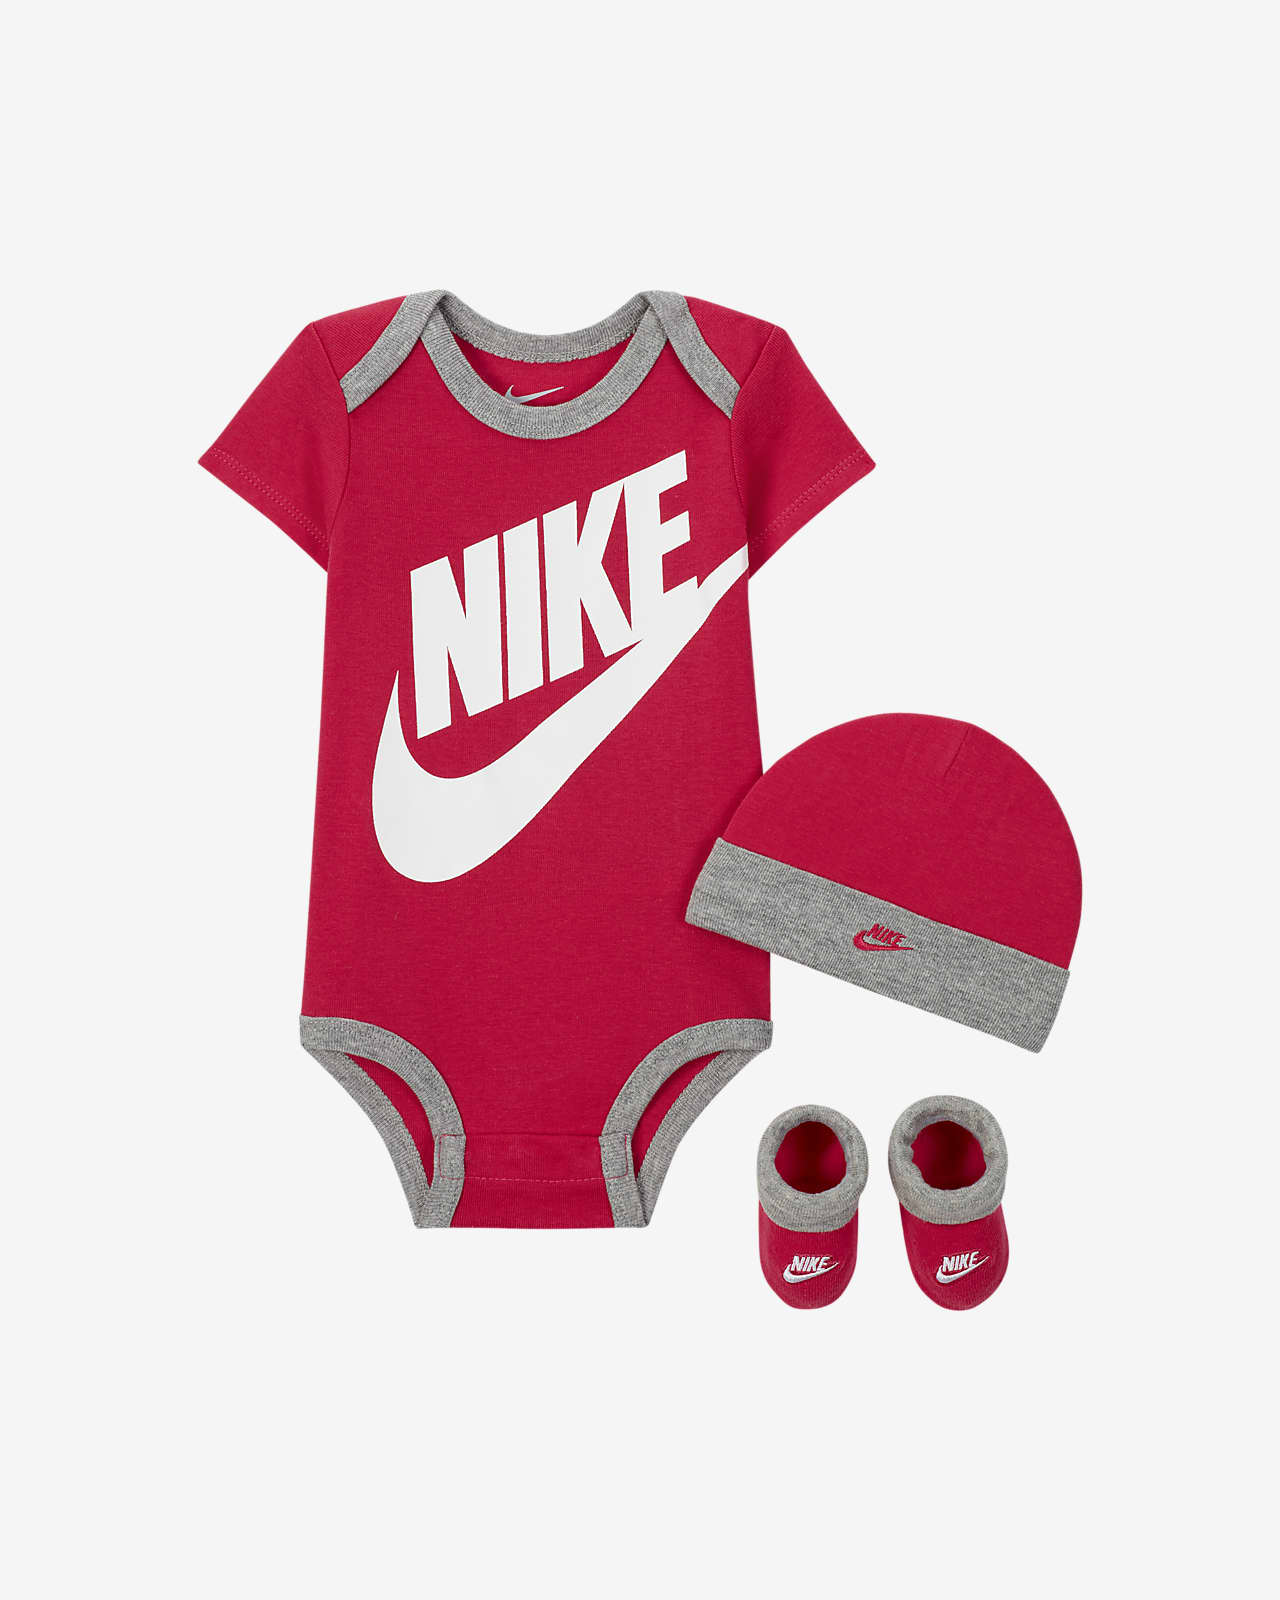 Completo in 3 pezzi Nike - Bebè (0-6 mesi)